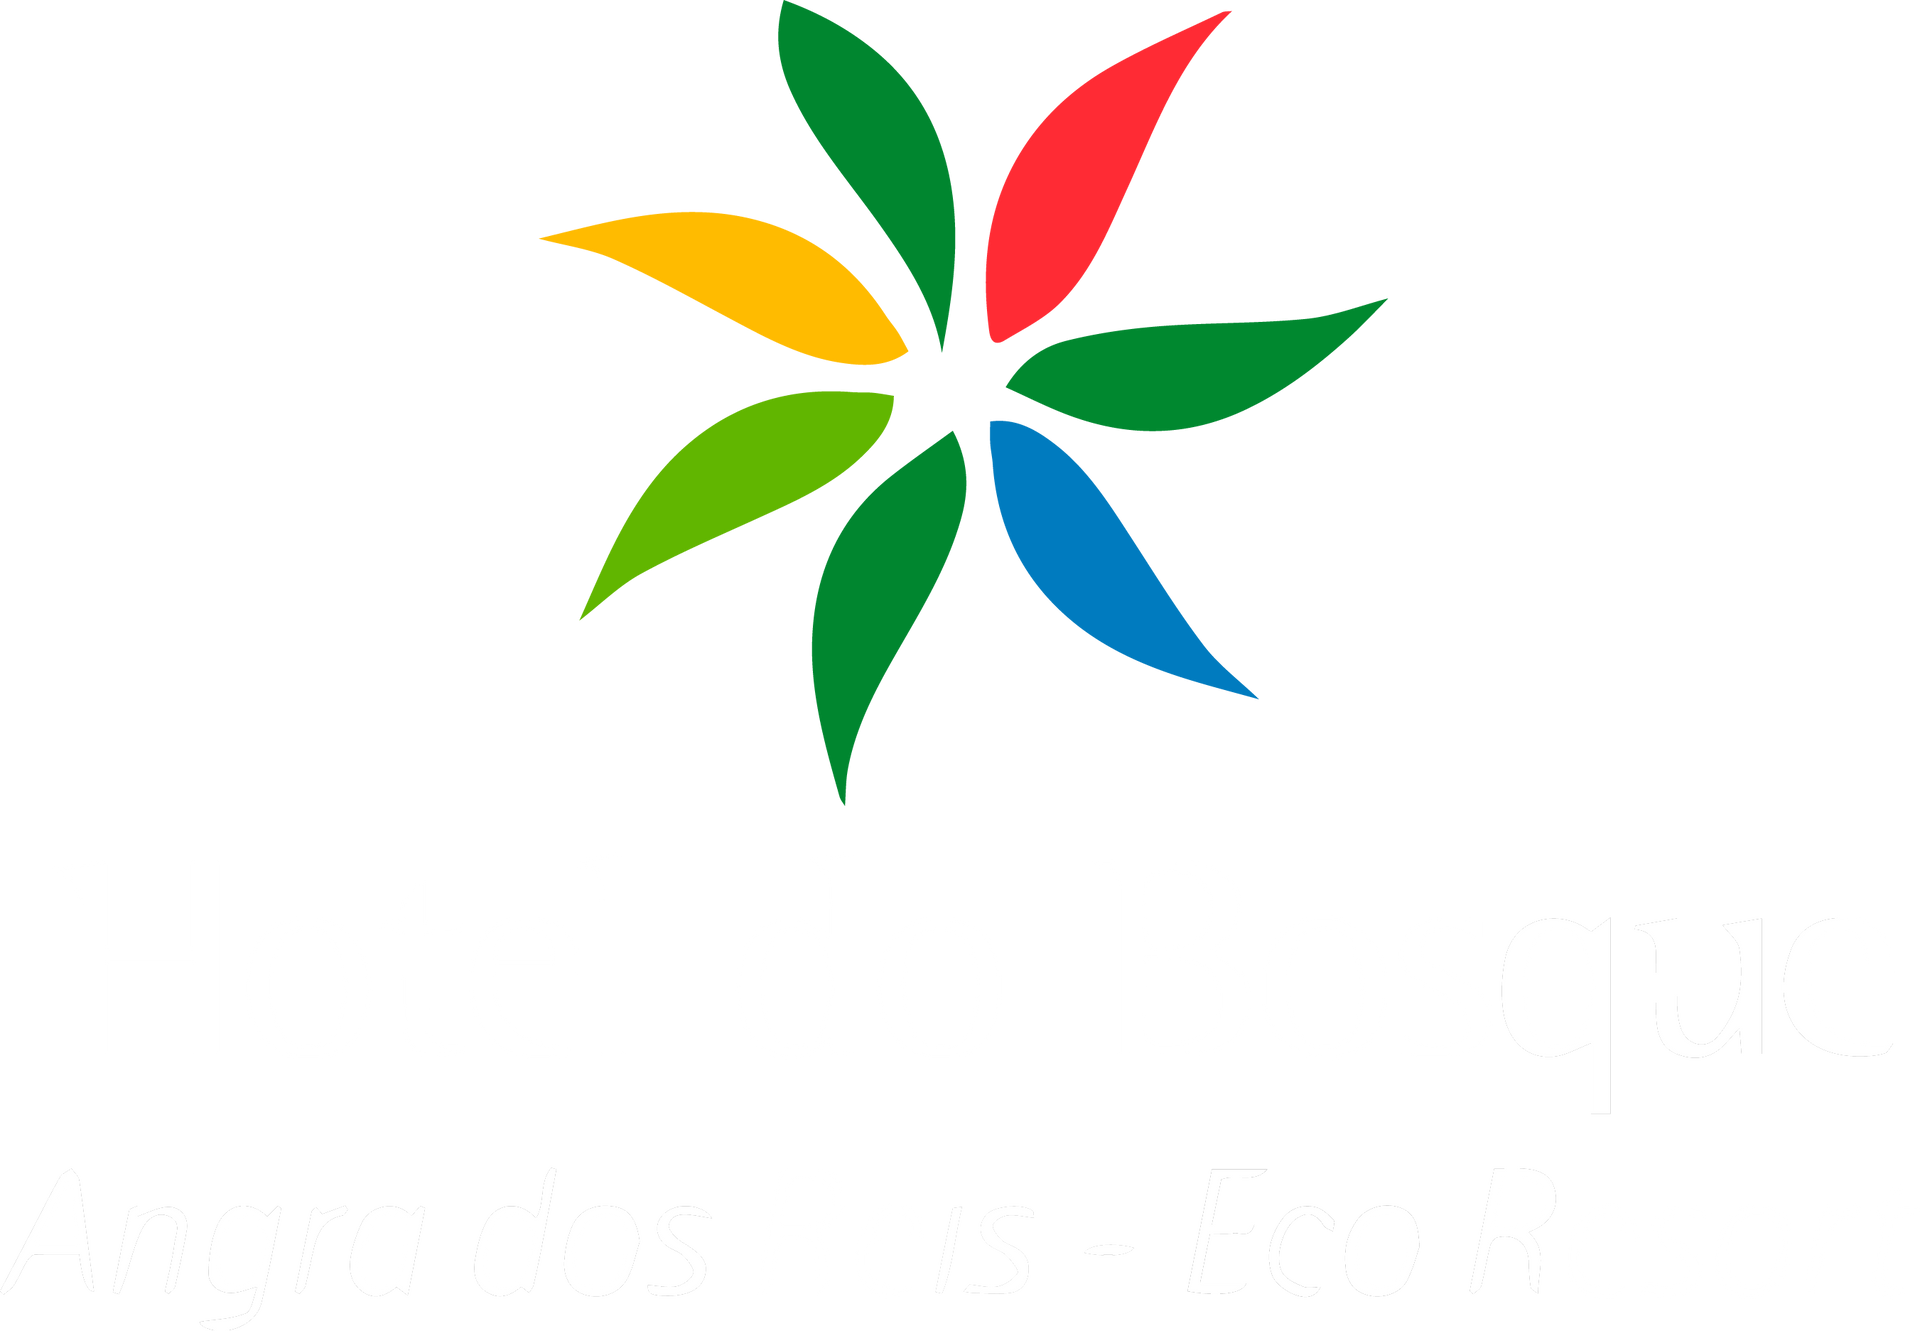 Logo Hotel do Bosque